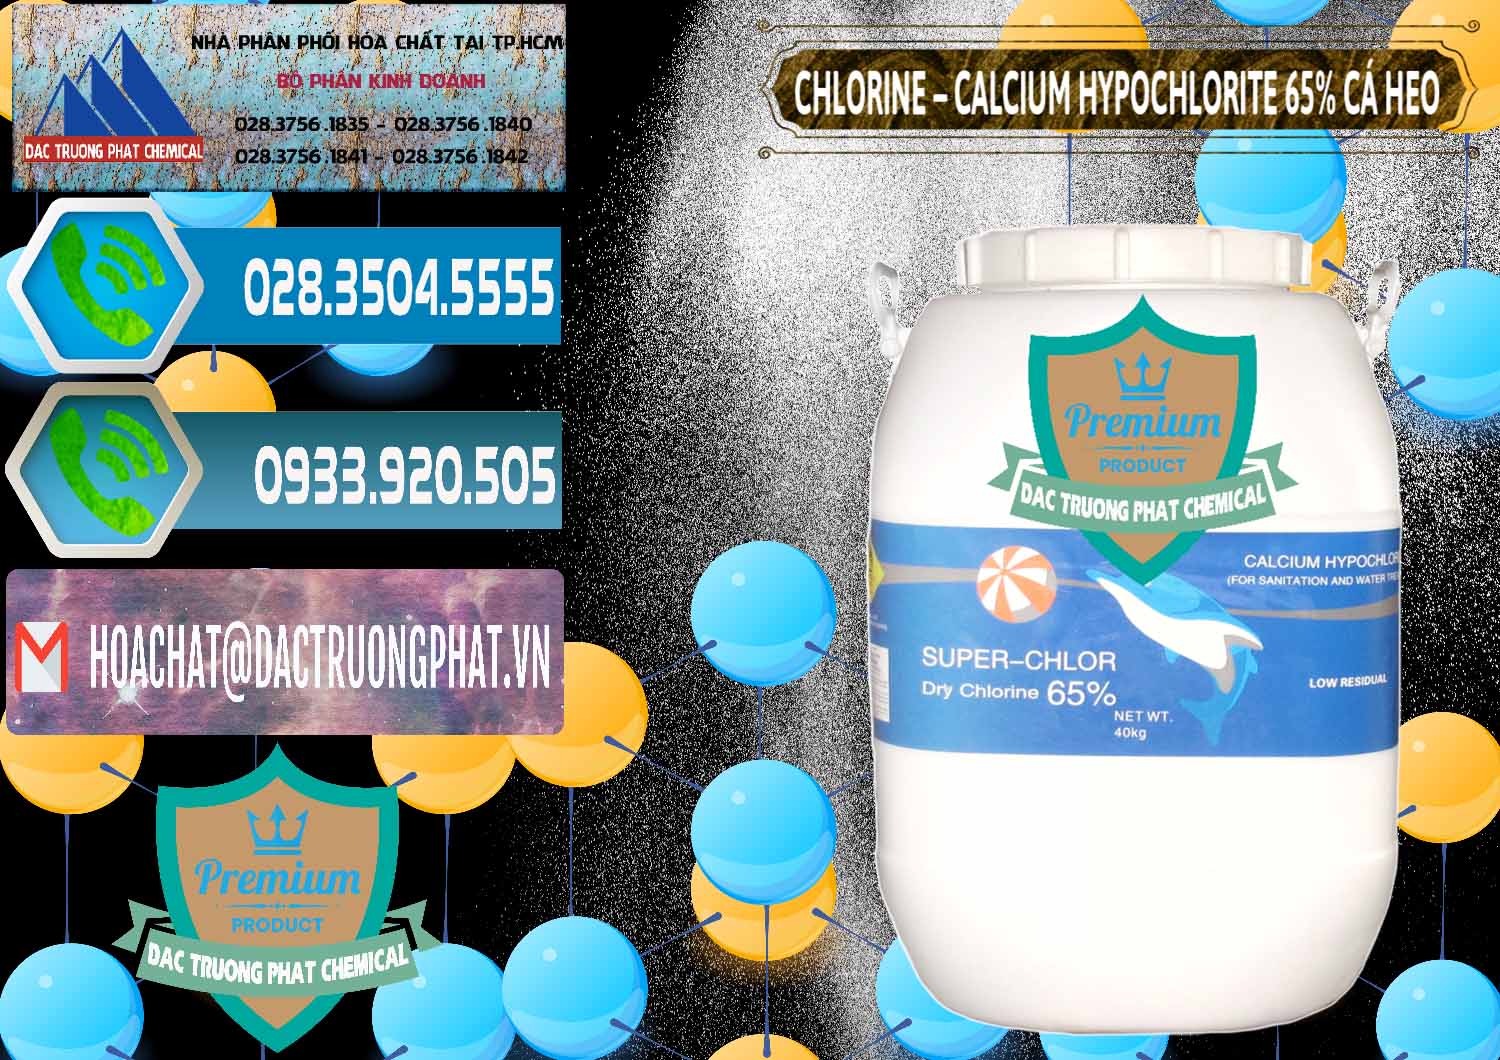 Nơi nhập khẩu & bán Clorin - Chlorine Cá Heo 65% Trung Quốc China - 0053 - Kinh doanh - cung cấp hóa chất tại TP.HCM - congtyhoachat.net